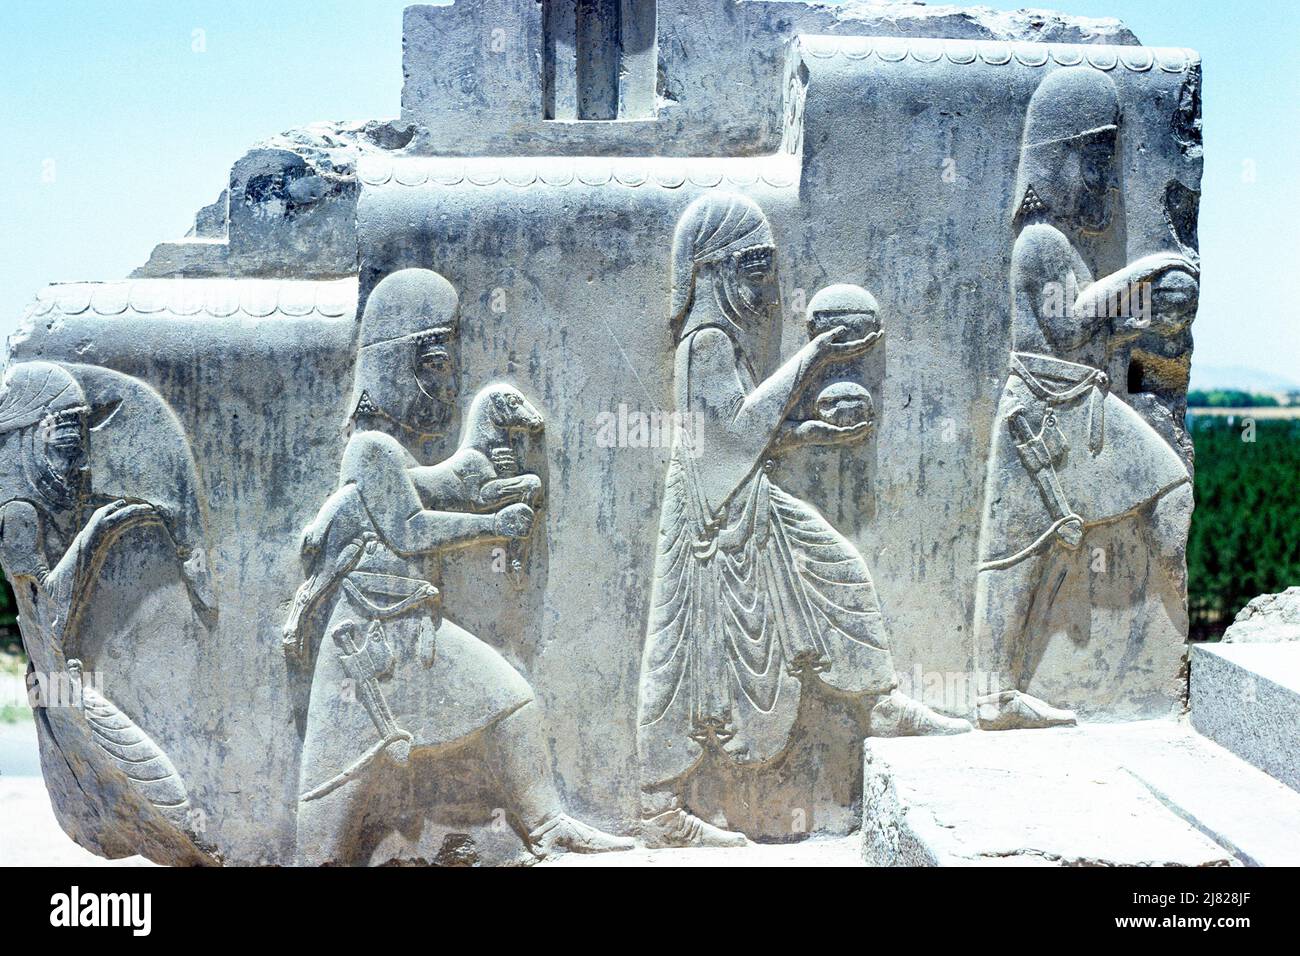 Persepolis, Iran - mur de relief montrant des serviteurs du parapet est de l'escalier sud dans la salle de Conseil située dans les ruines de l'ancienne ville de Persepolis, capitale cérémonielle de l'Empire des Achaemenid, dans la province de Fars, en Iran. Archiver l'image prise en 1976 Banque D'Images